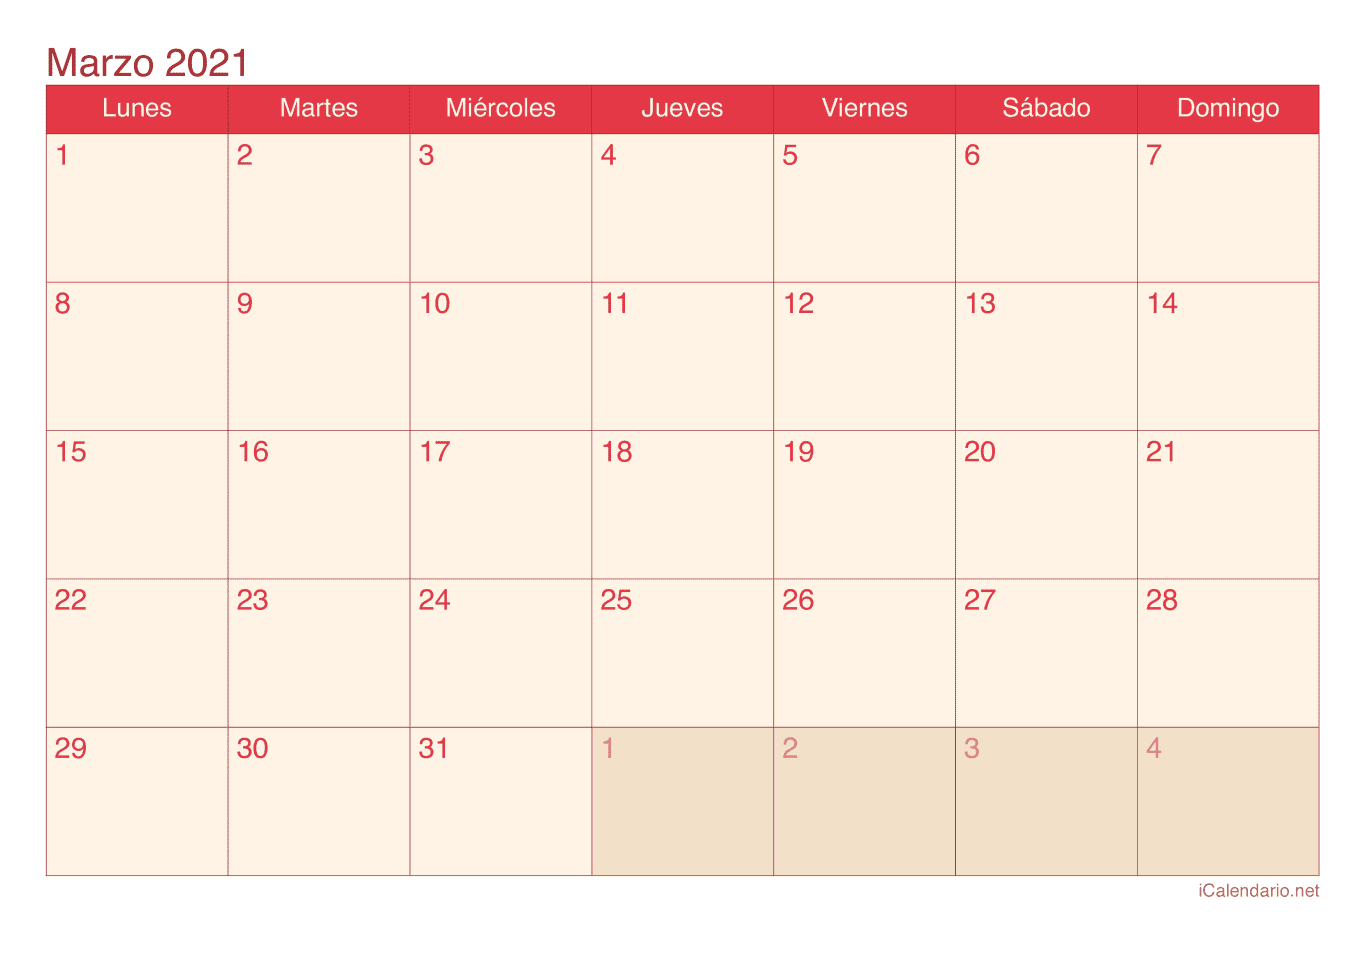 Calendario de marzo 2021 - Cherry